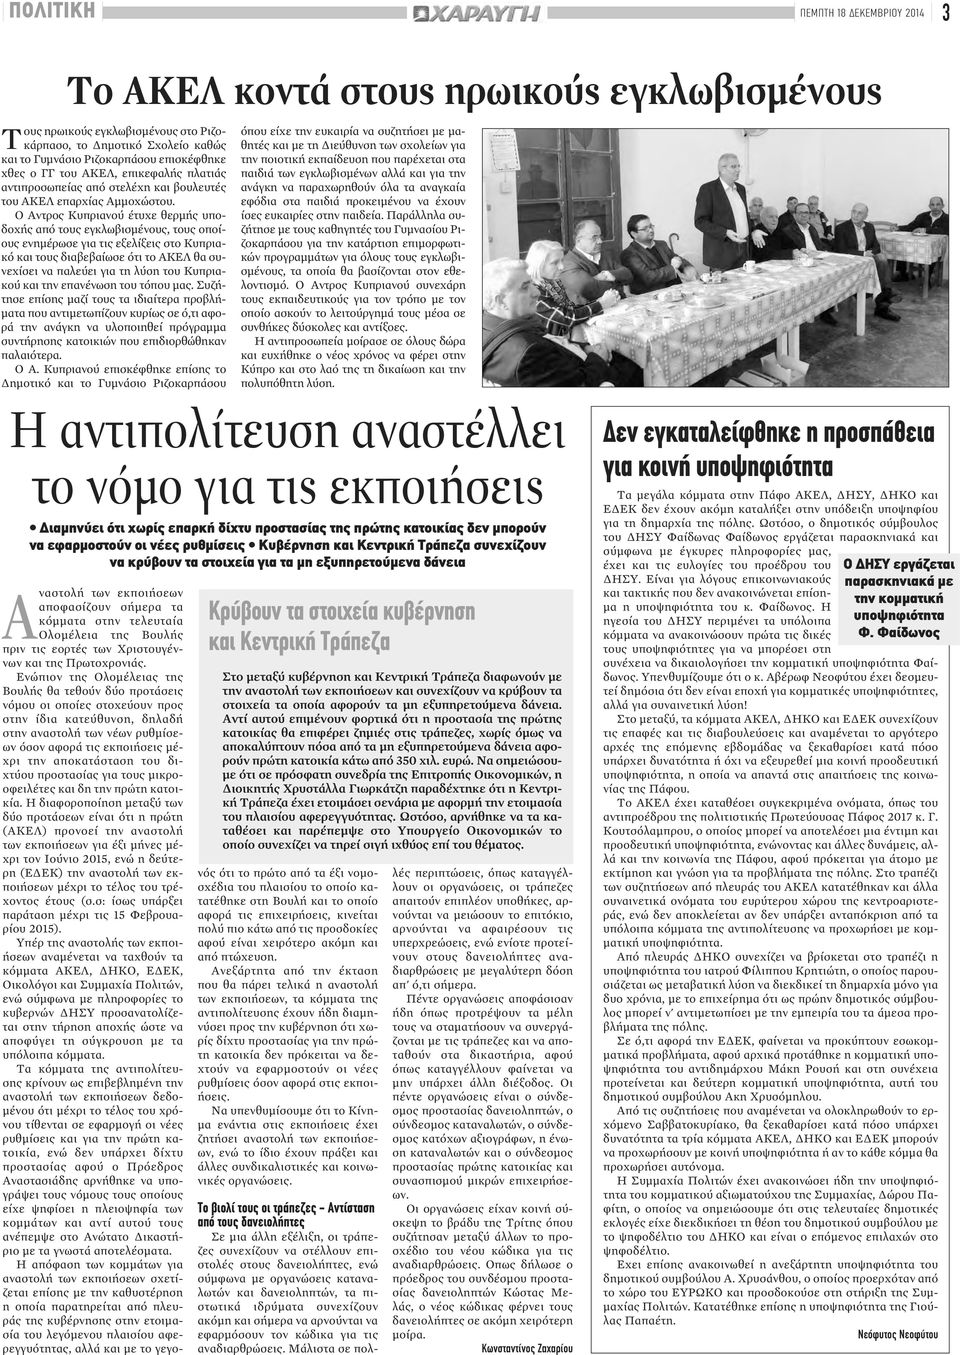 Ο Αντρος Κυπριανού έτυχε θερμής υποδοχής από τους εγκλωβισμένους, τους οποίους ενημέρωσε για τις εξελίξεις στο Κυπριακό και τους διαβεβαίωσε ότι το ΑΚΕΛ θα συνεχίσει να παλεύει για τη λύση του